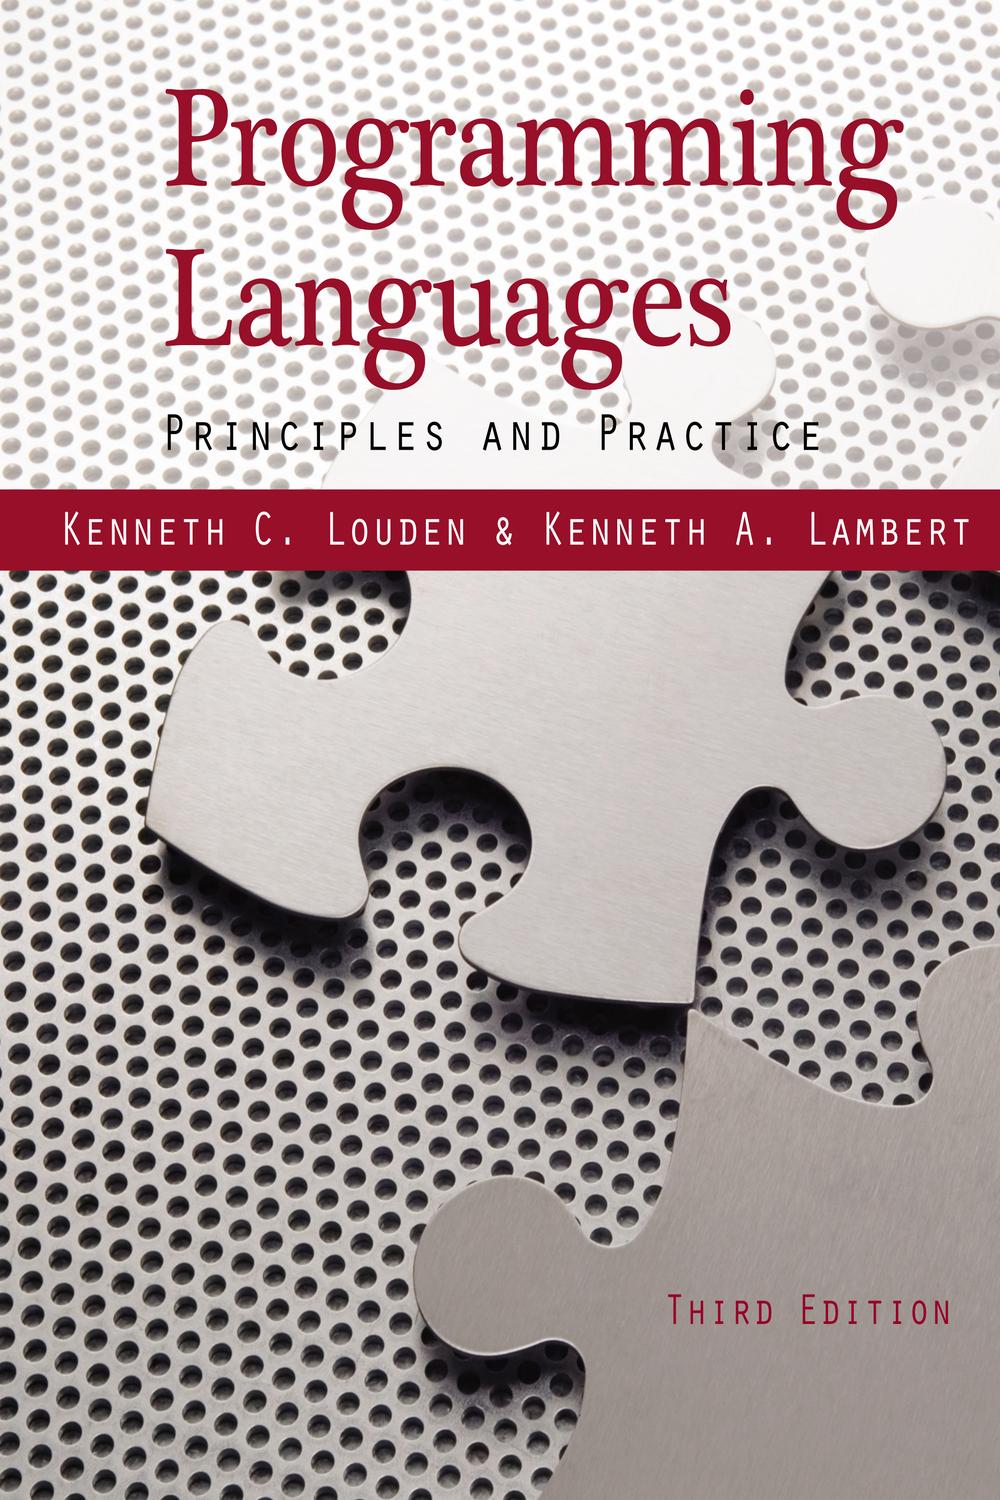 Programming Languages - Kenneth Louden, Lambert